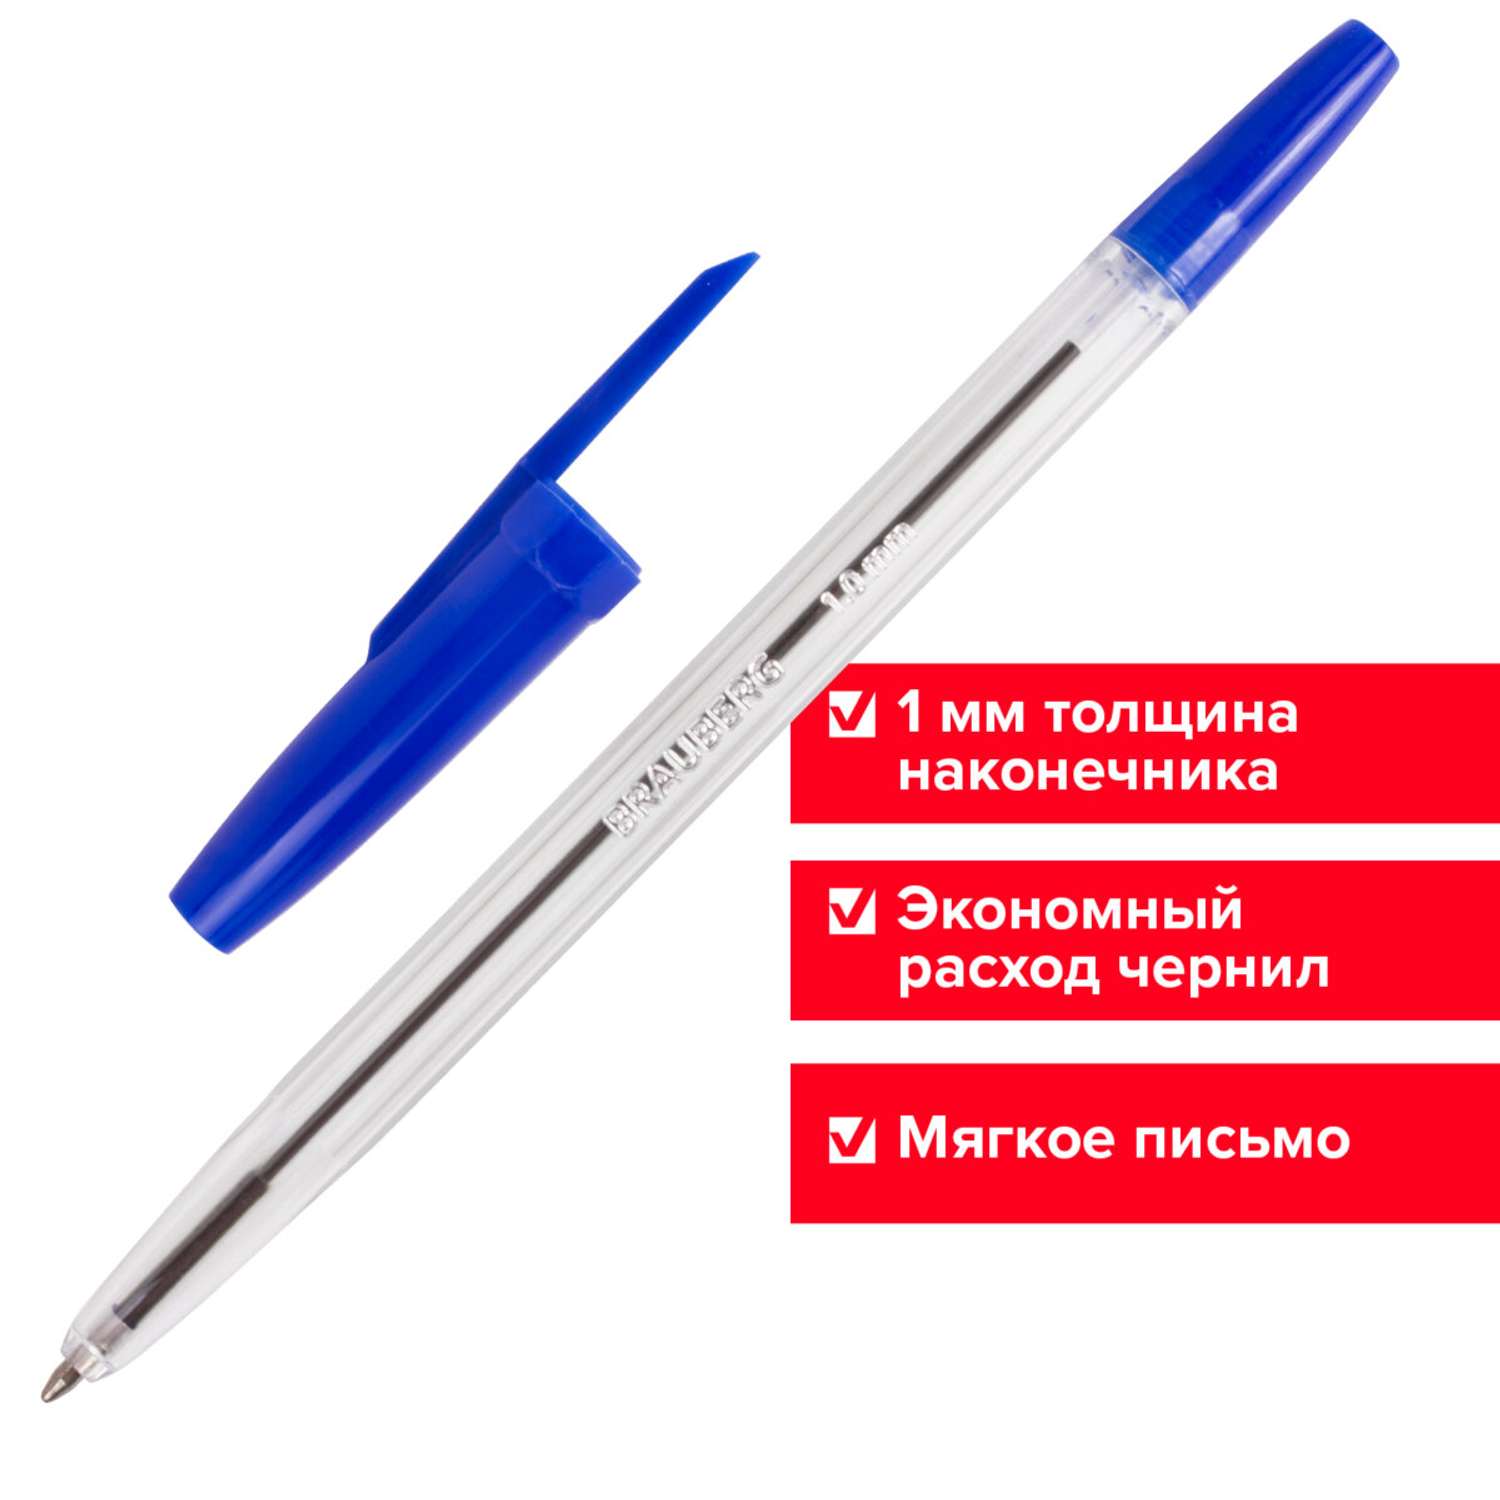 Ручки шариковые Brauberg синие набор 50 штук - фото 11